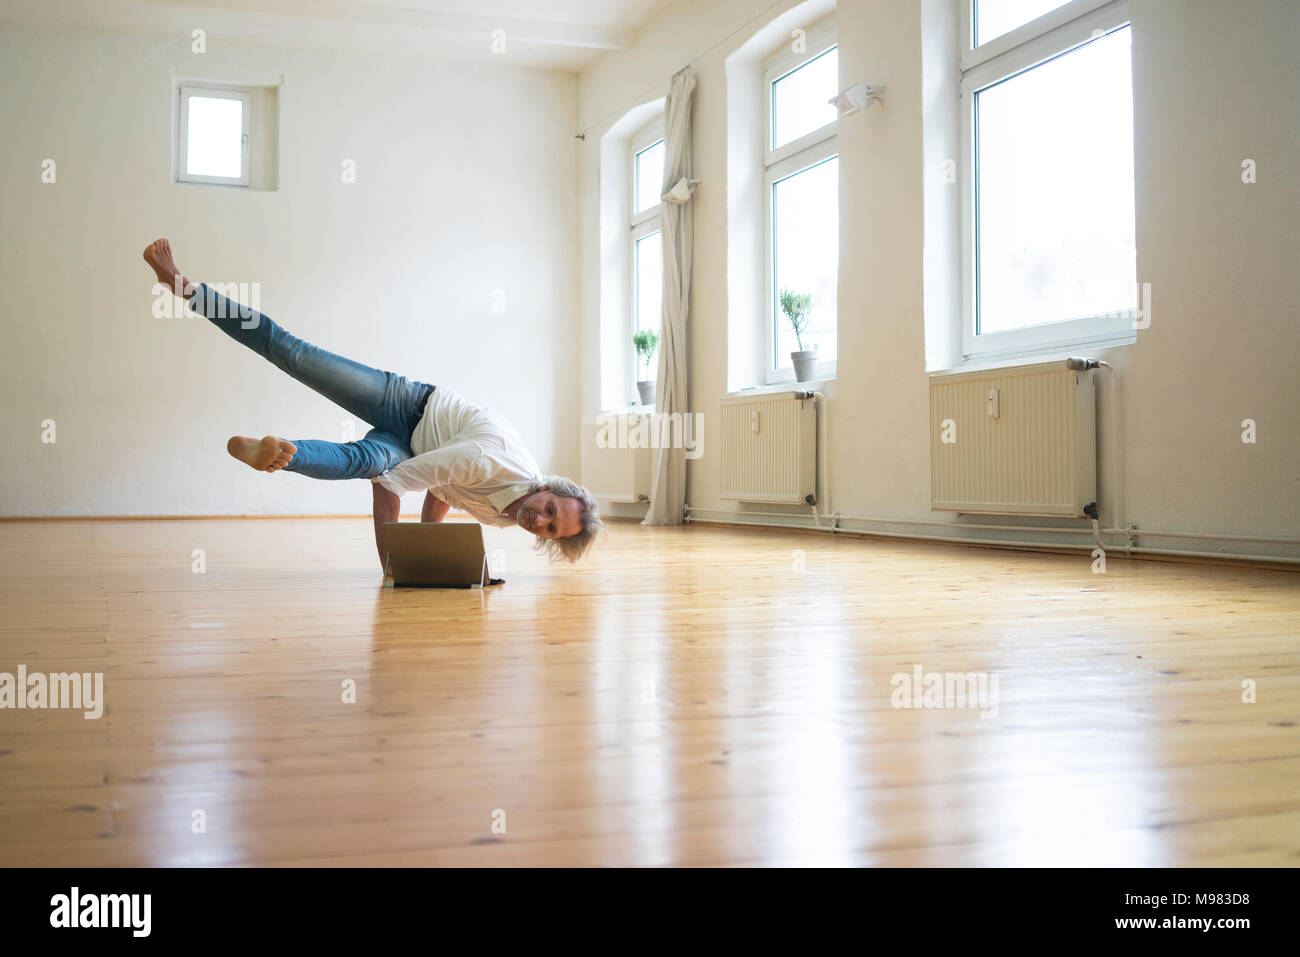 Reifer Mann macht einen Handstand auf Fußboden im leeren Raum auf der Suche nach Tablet Stockfoto